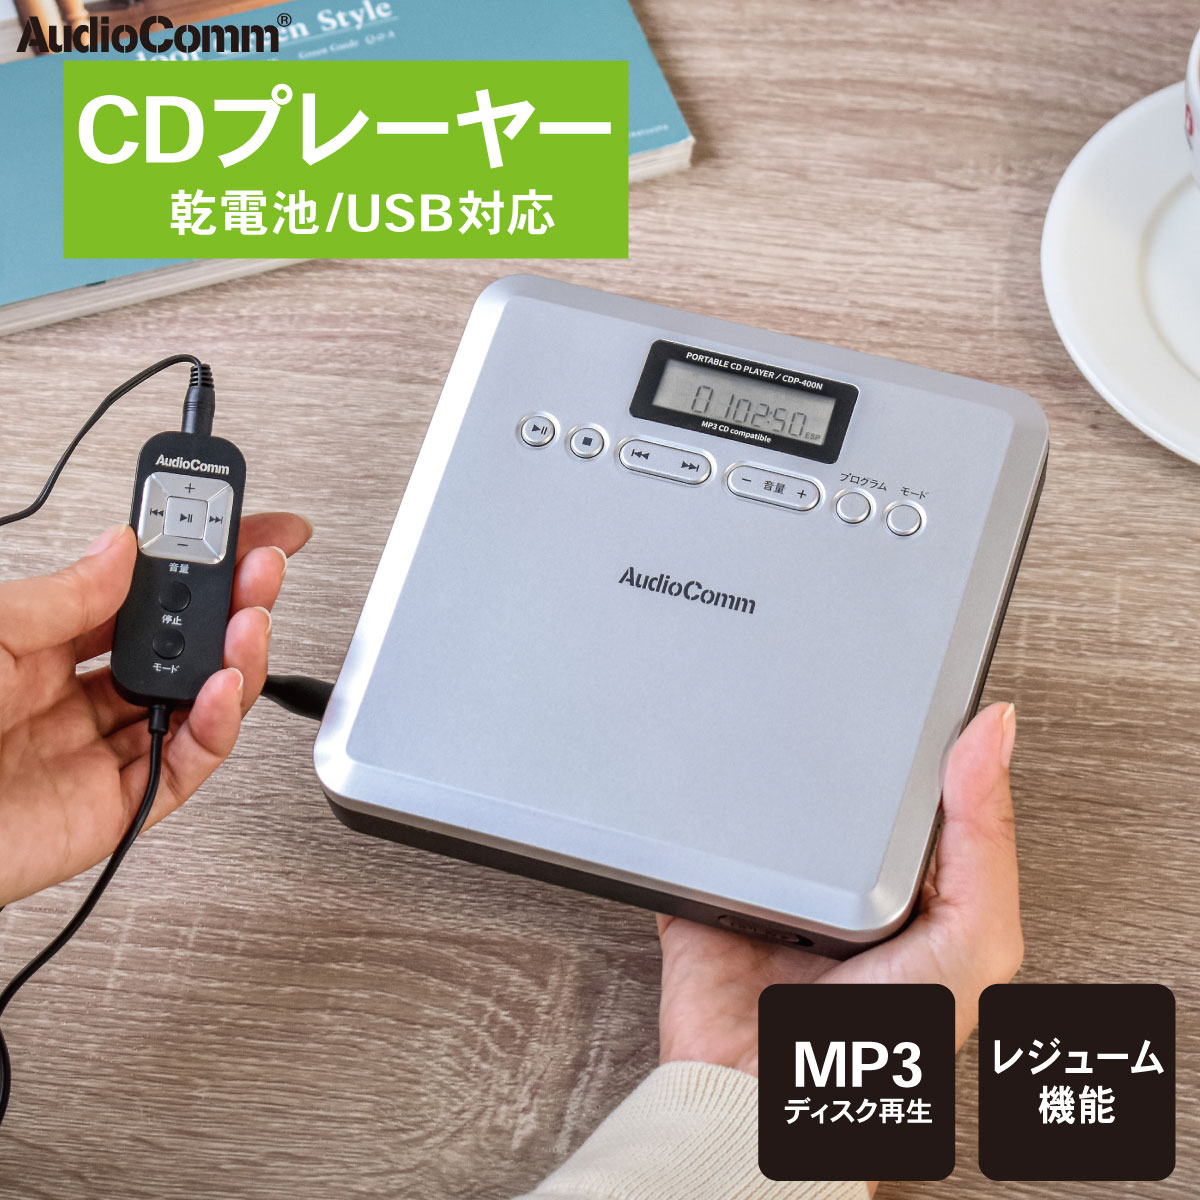 AudioComm CDプレーヤー ポータブル MP3